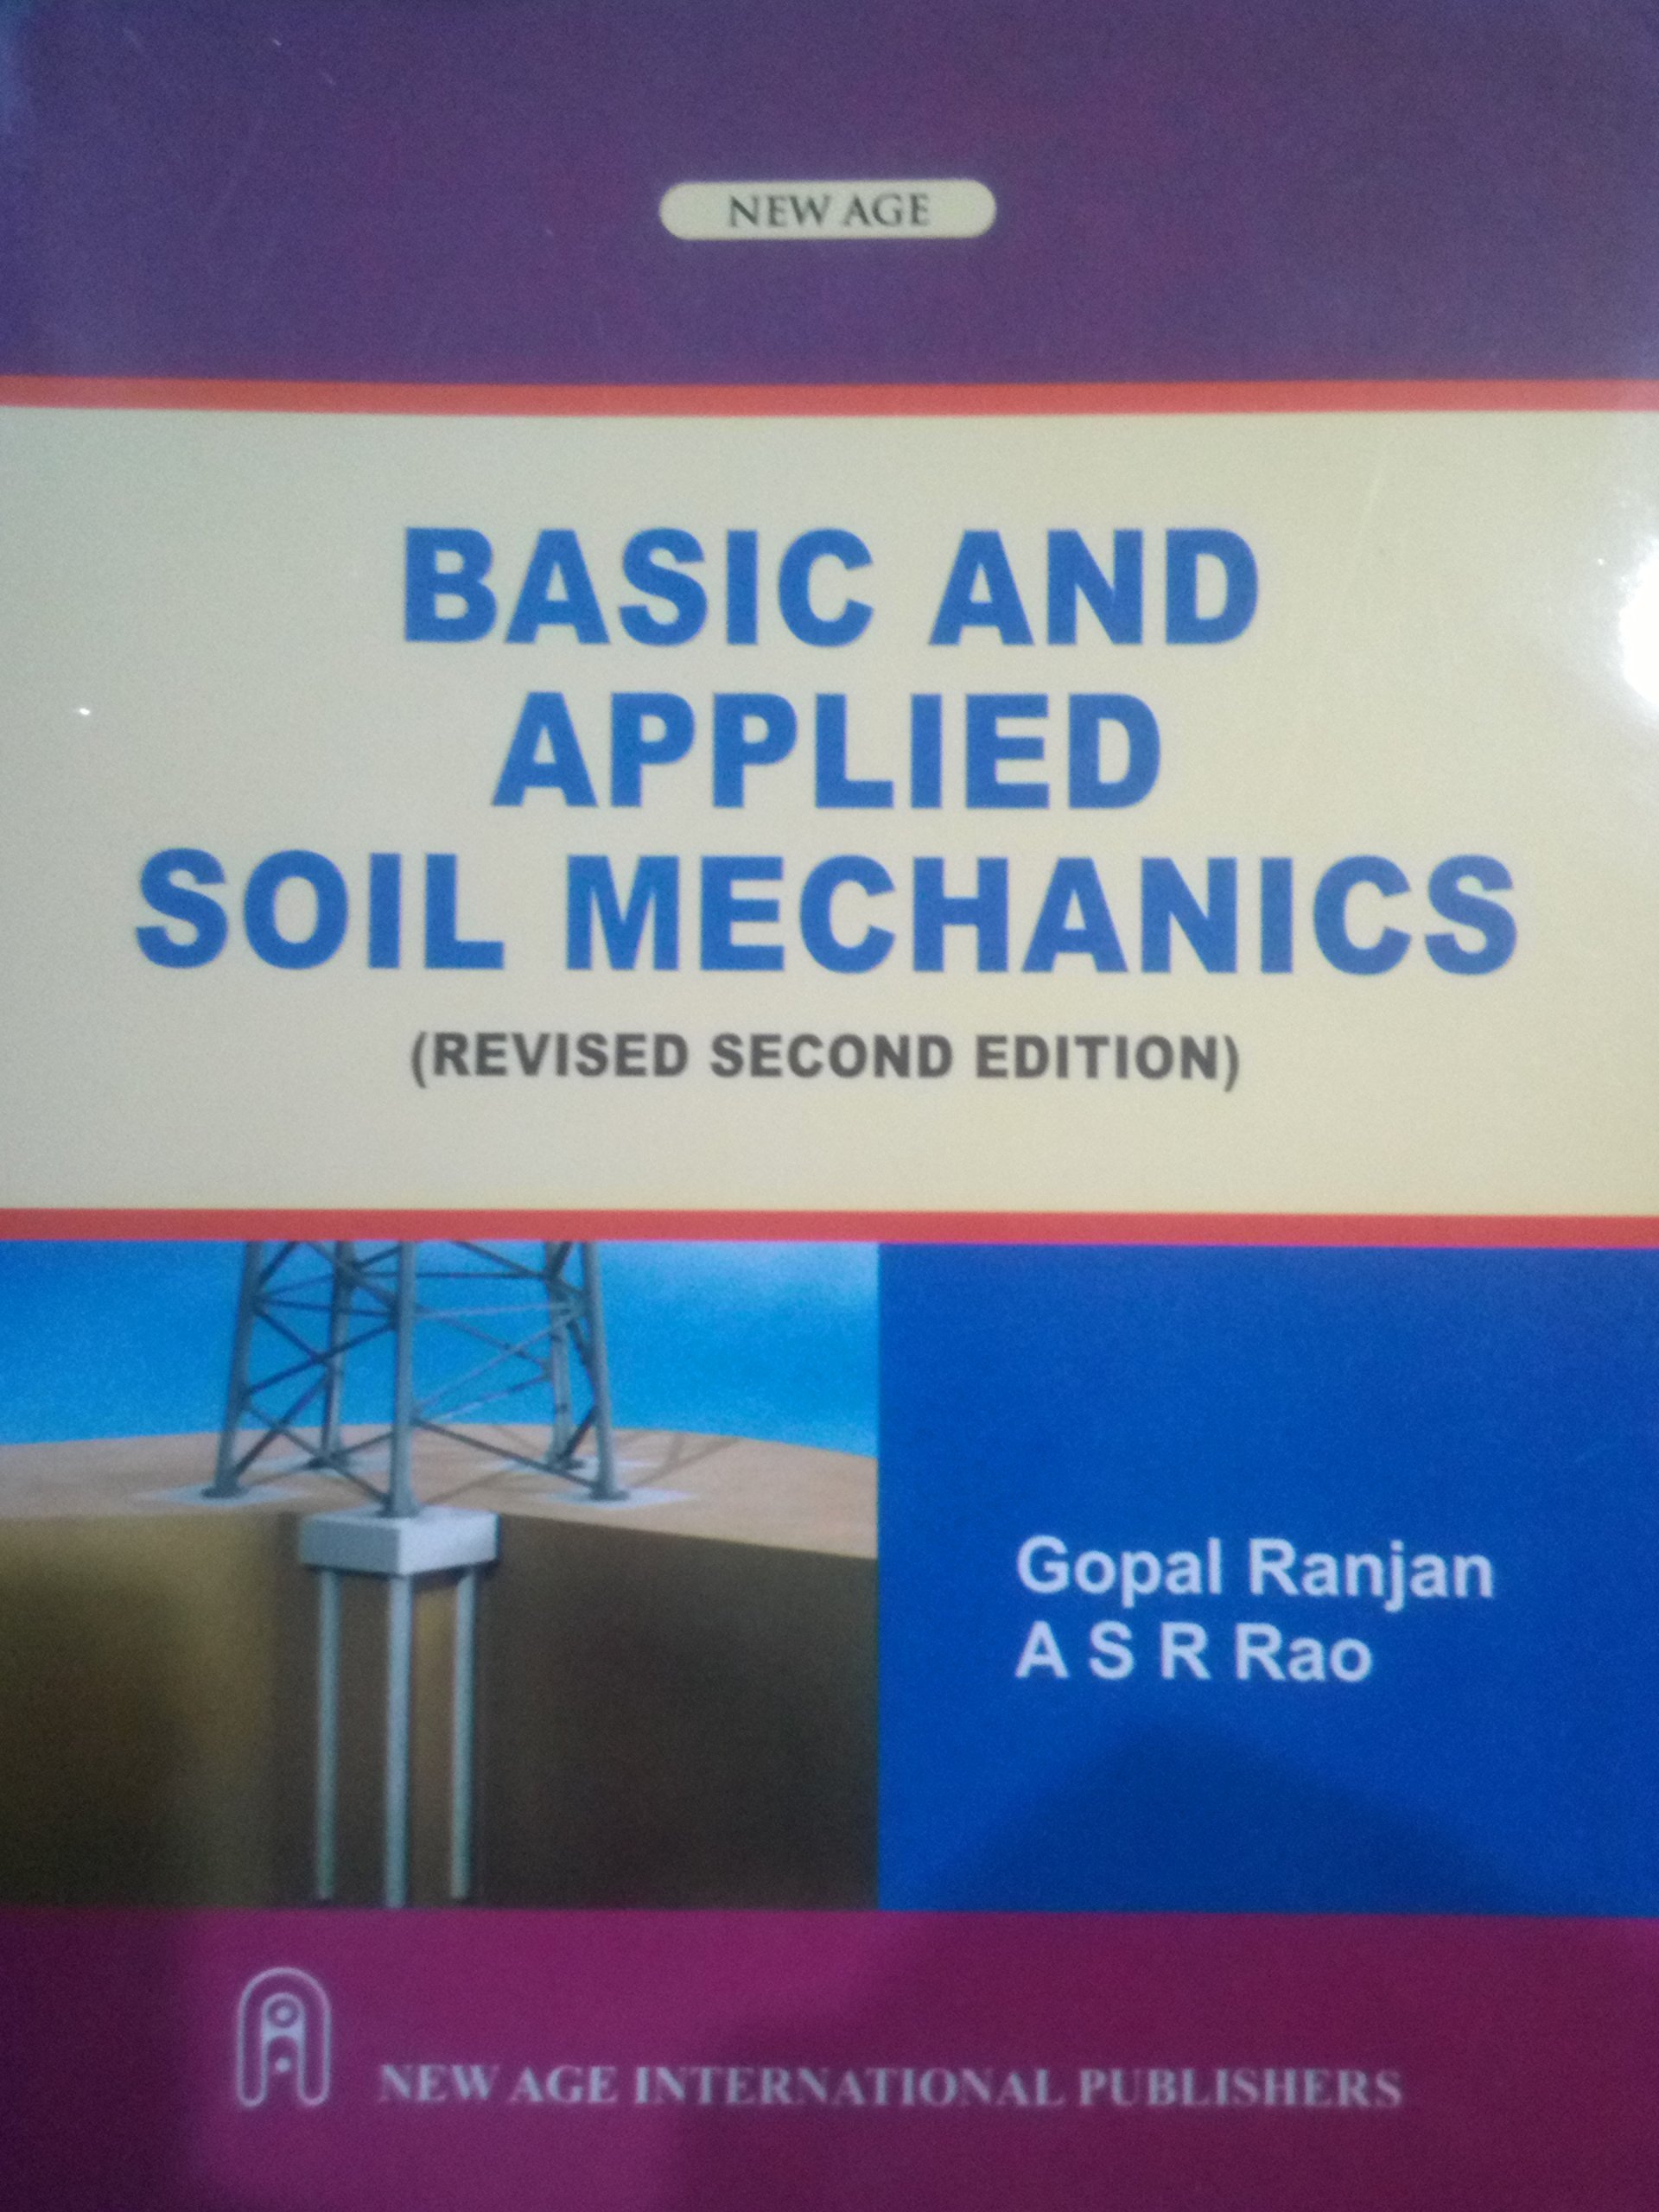 soil mechanics by gopal ranjan pdf merge